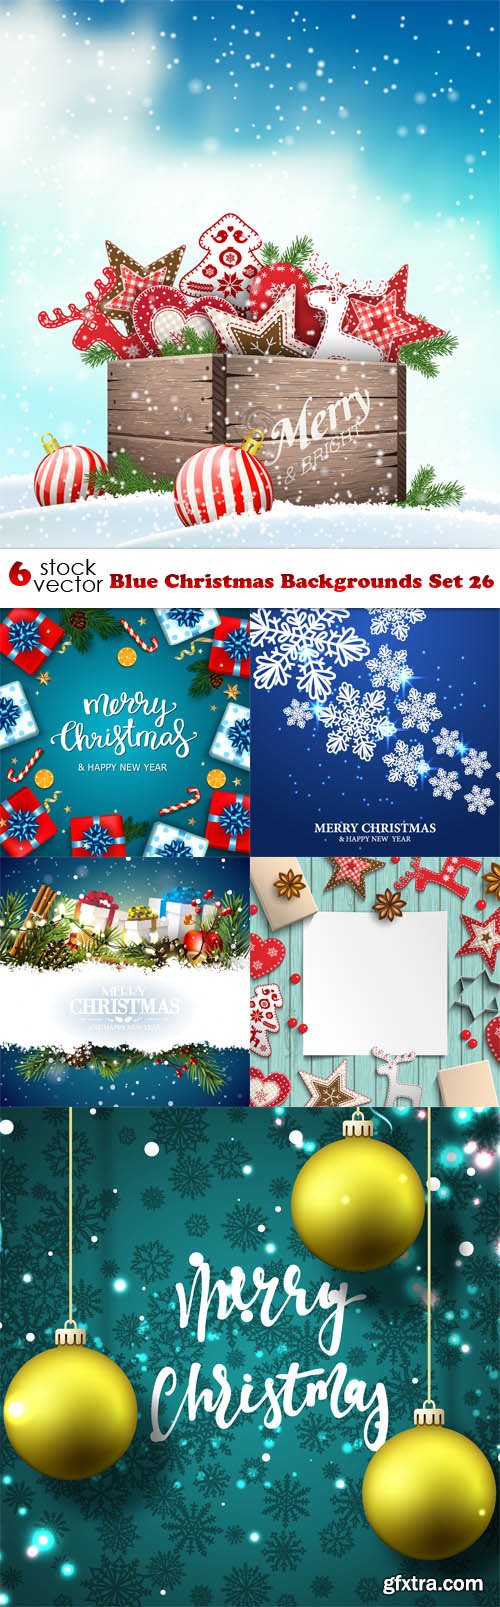 Vectors - Blue Christmas Backgrounds Set 26